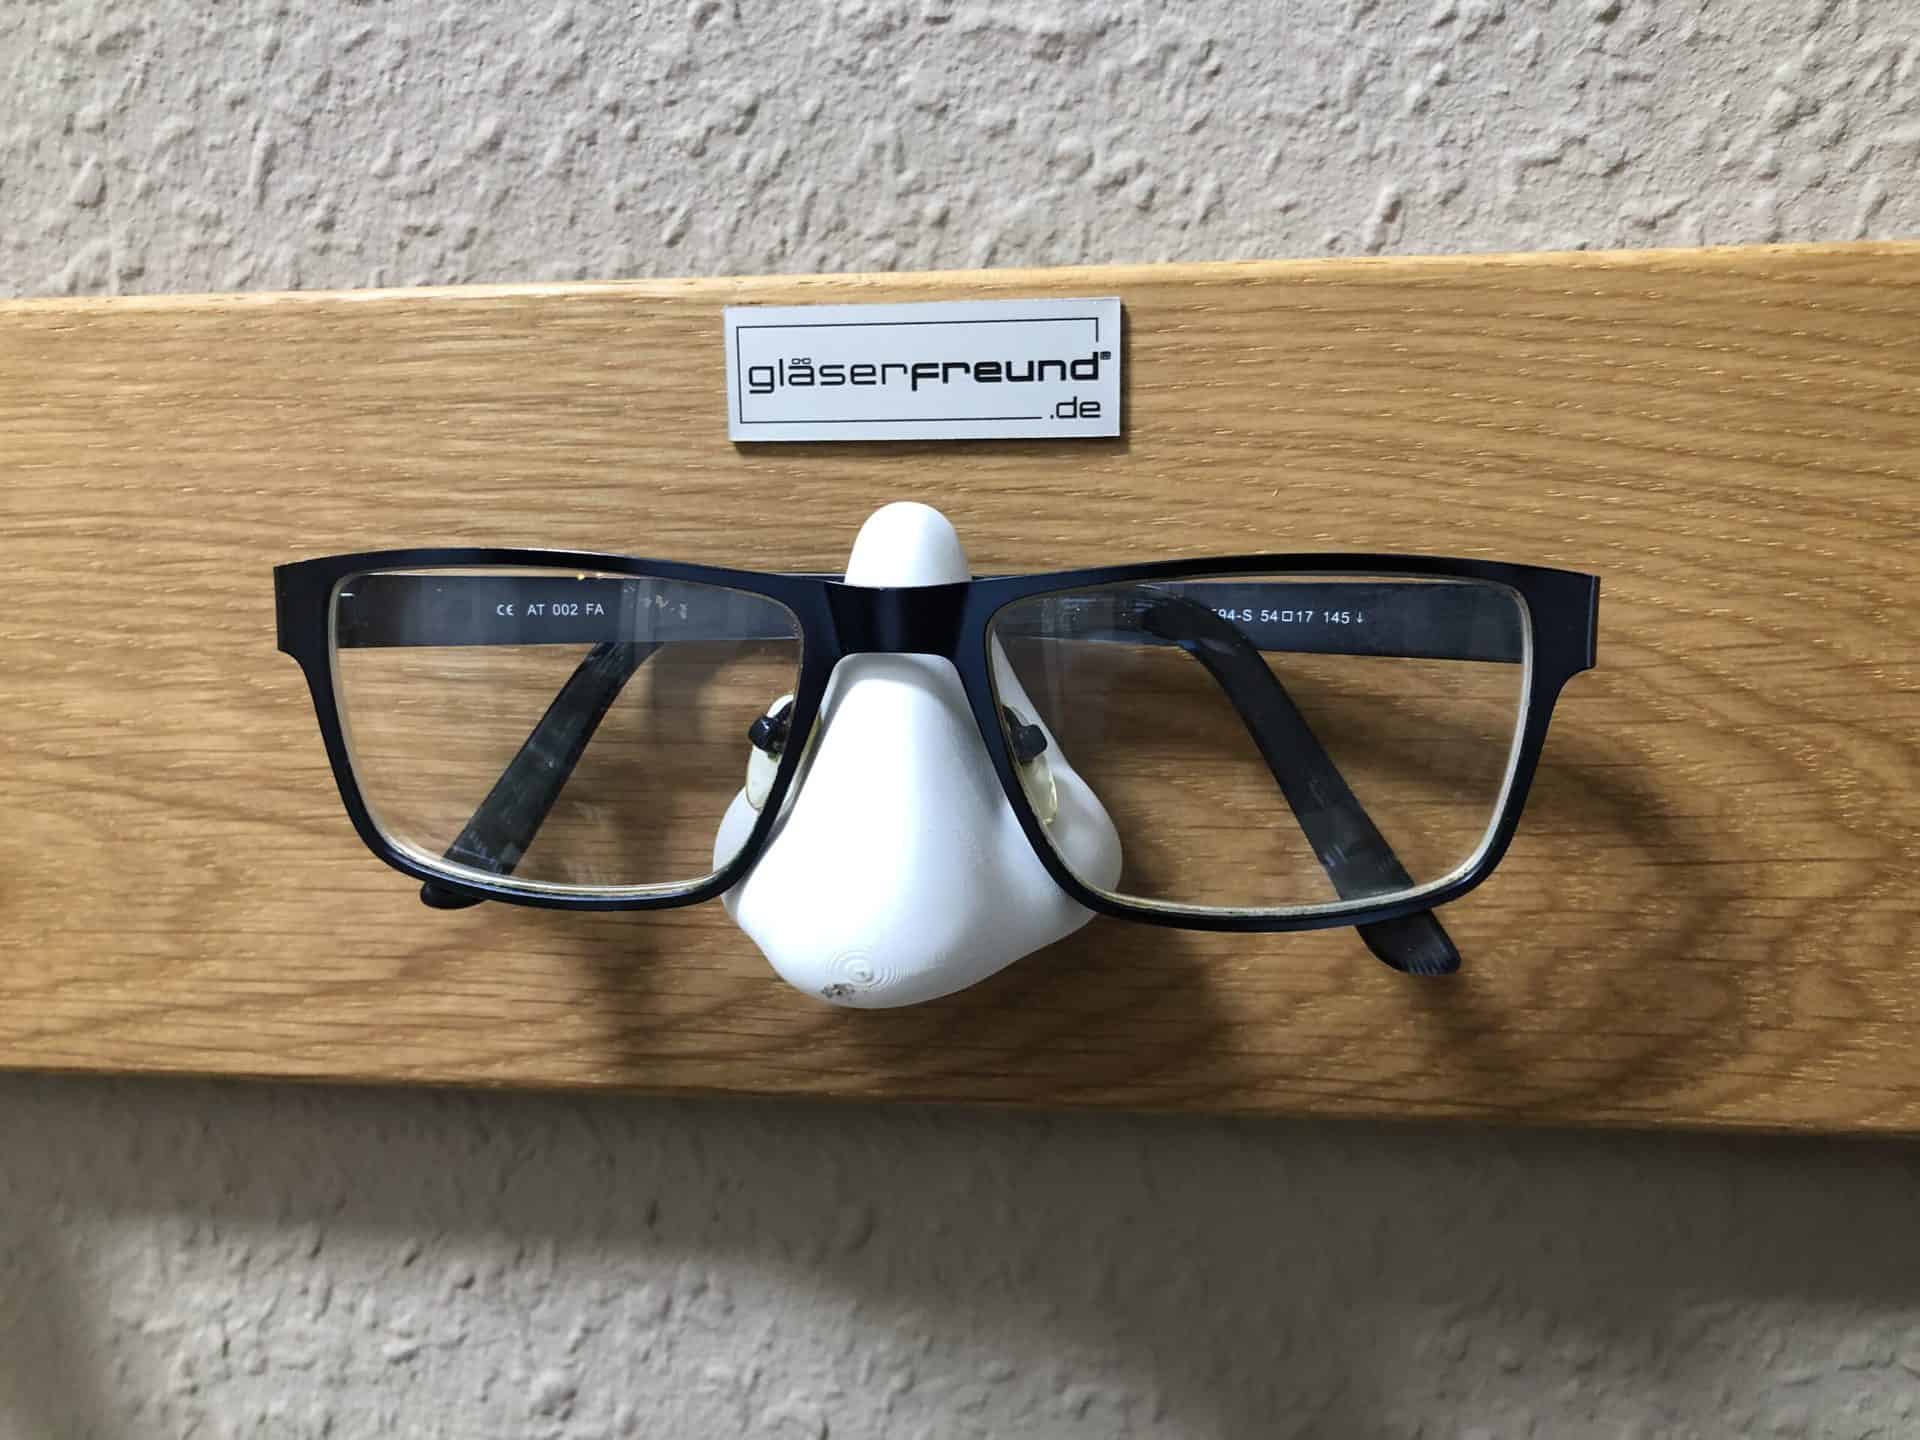 Meine Brillen auf dem Kessy-Q von Gläserfreund in nah